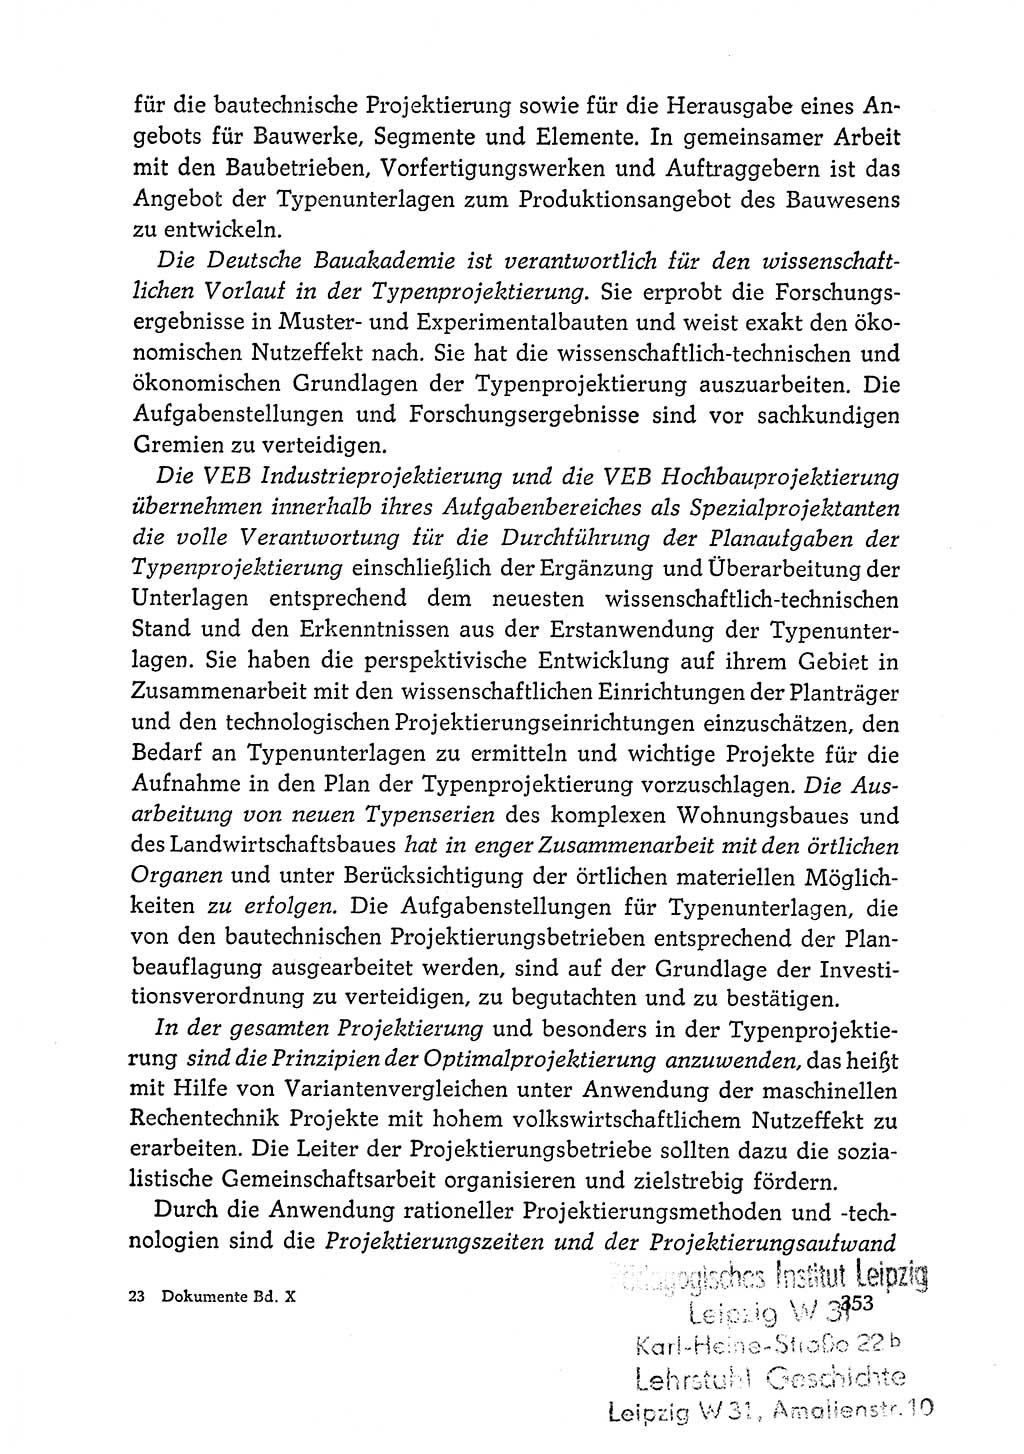 Dokumente der Sozialistischen Einheitspartei Deutschlands (SED) [Deutsche Demokratische Republik (DDR)] 1964-1965, Seite 353 (Dok. SED DDR 1964-1965, S. 353)